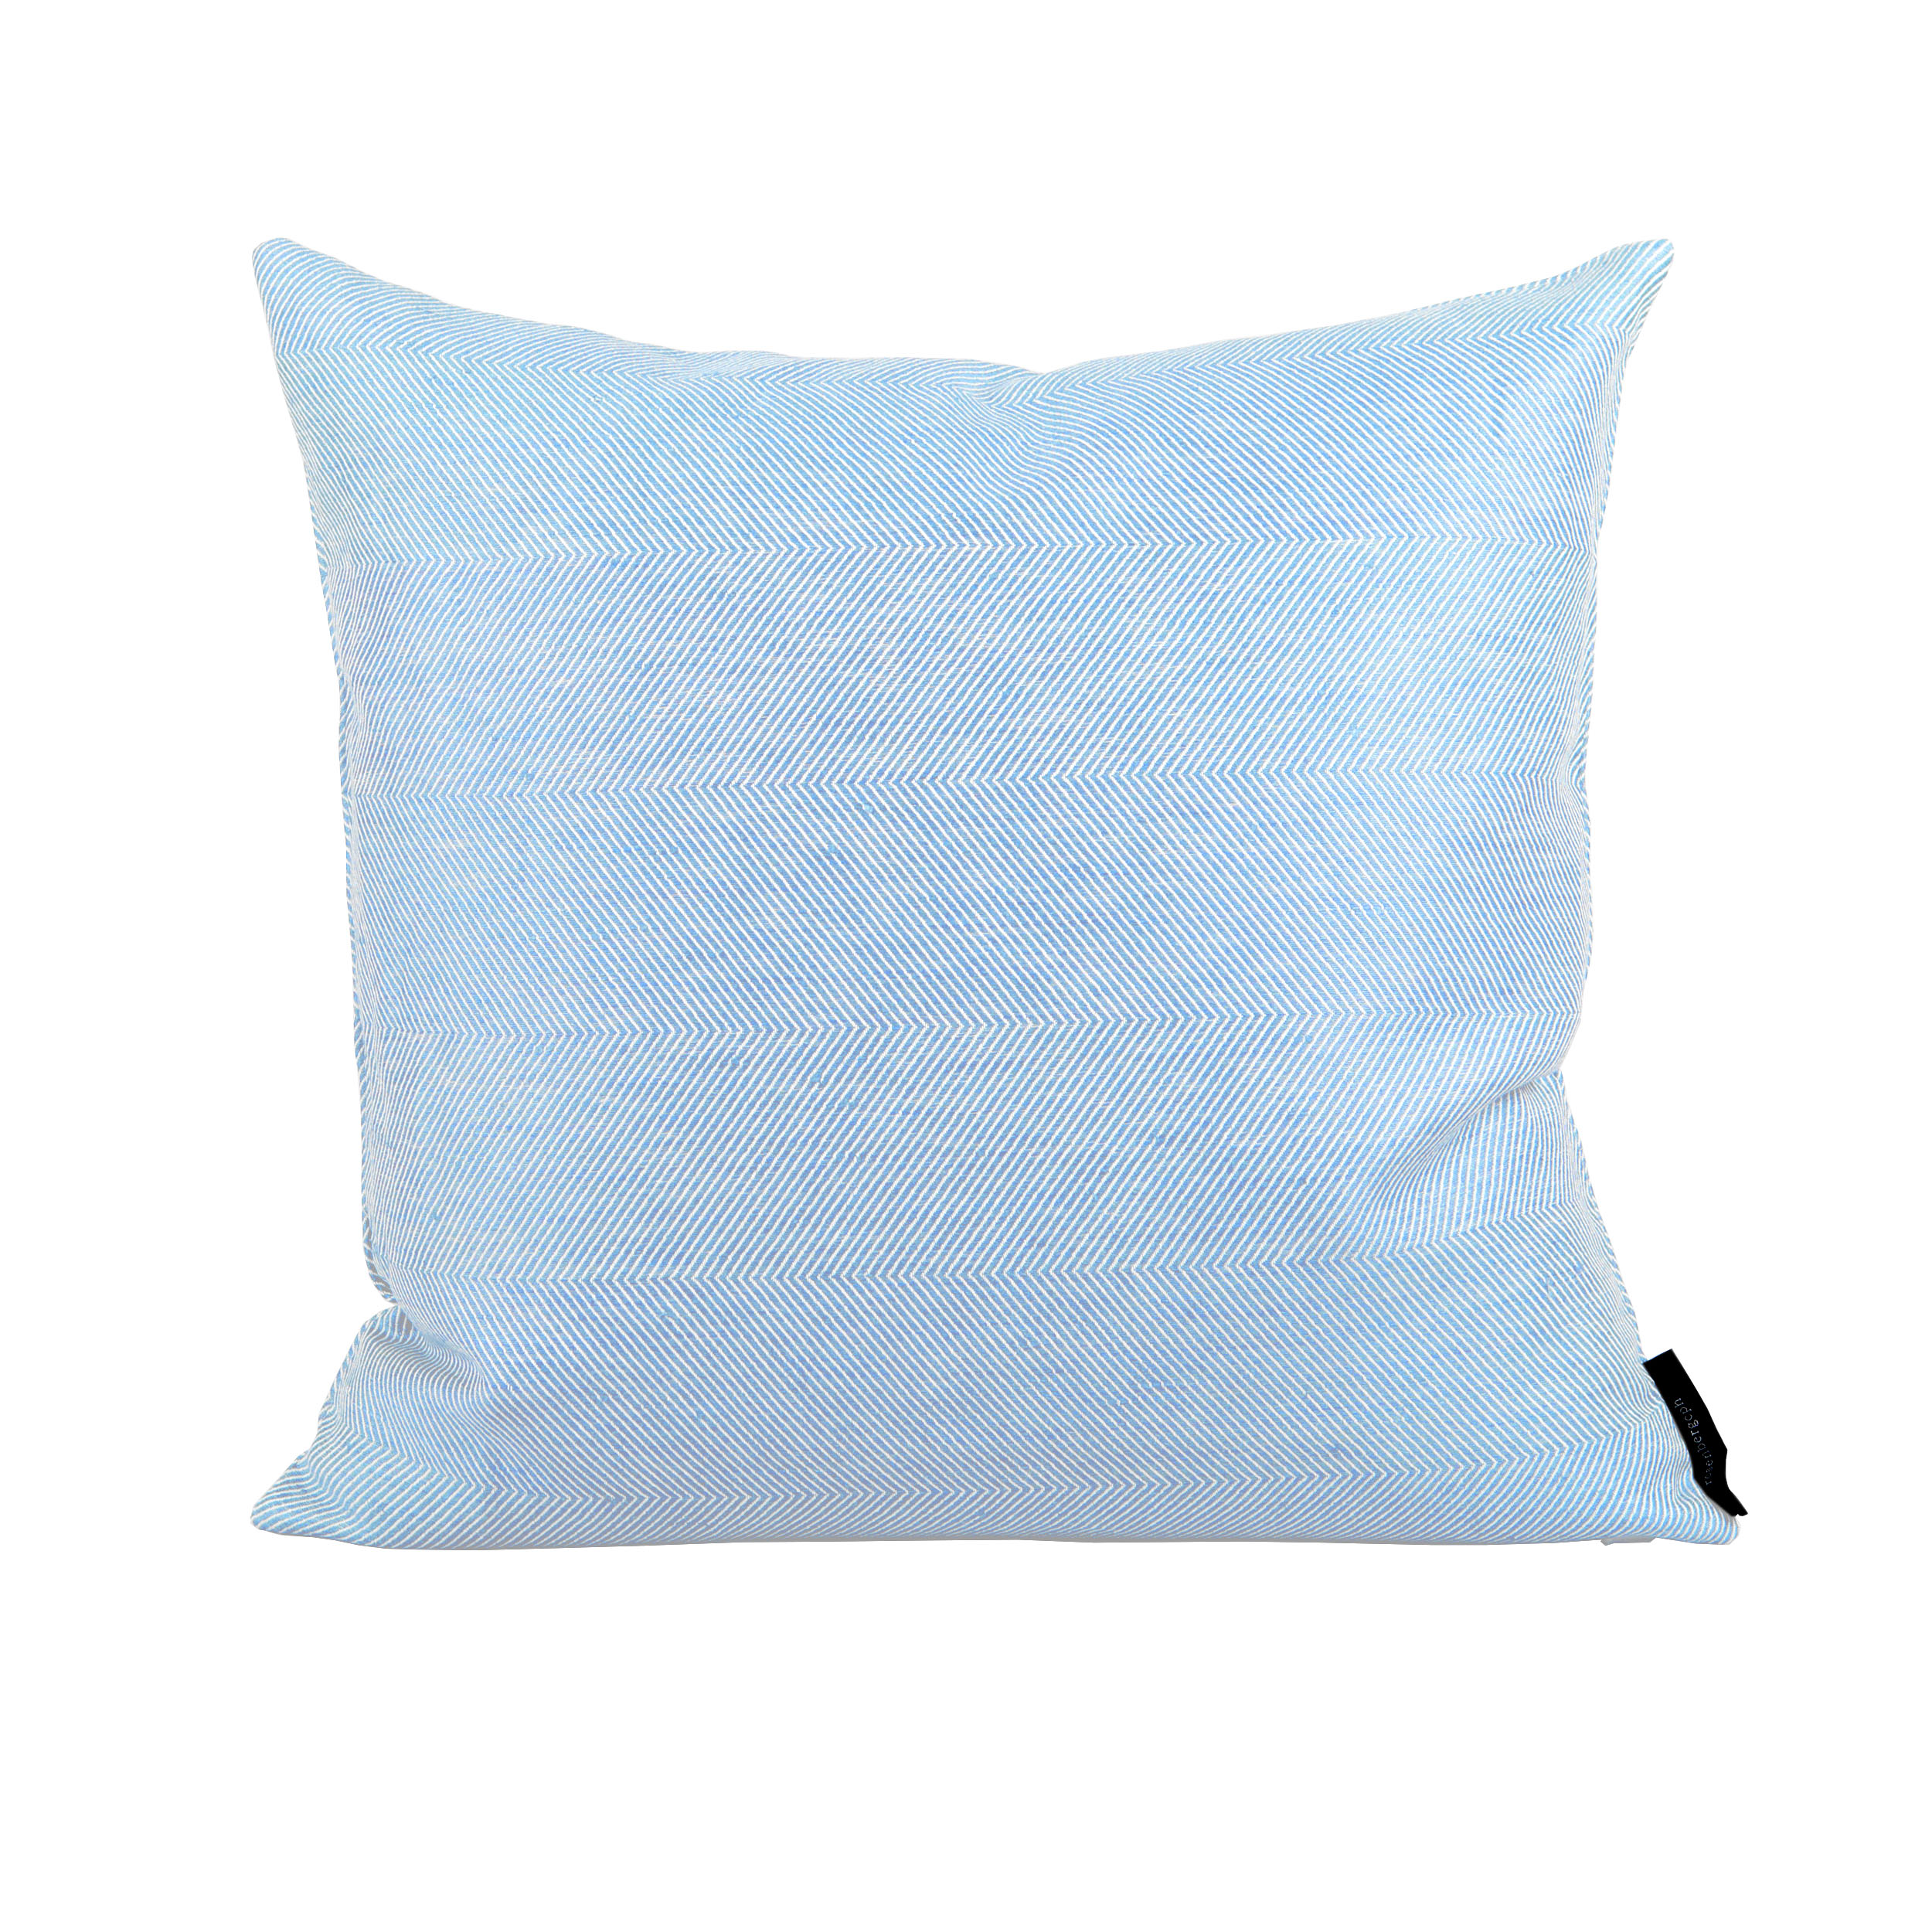 Square cushion linen/cotton Sky Blue, design by Anne Rosenberg, RosenbergCph